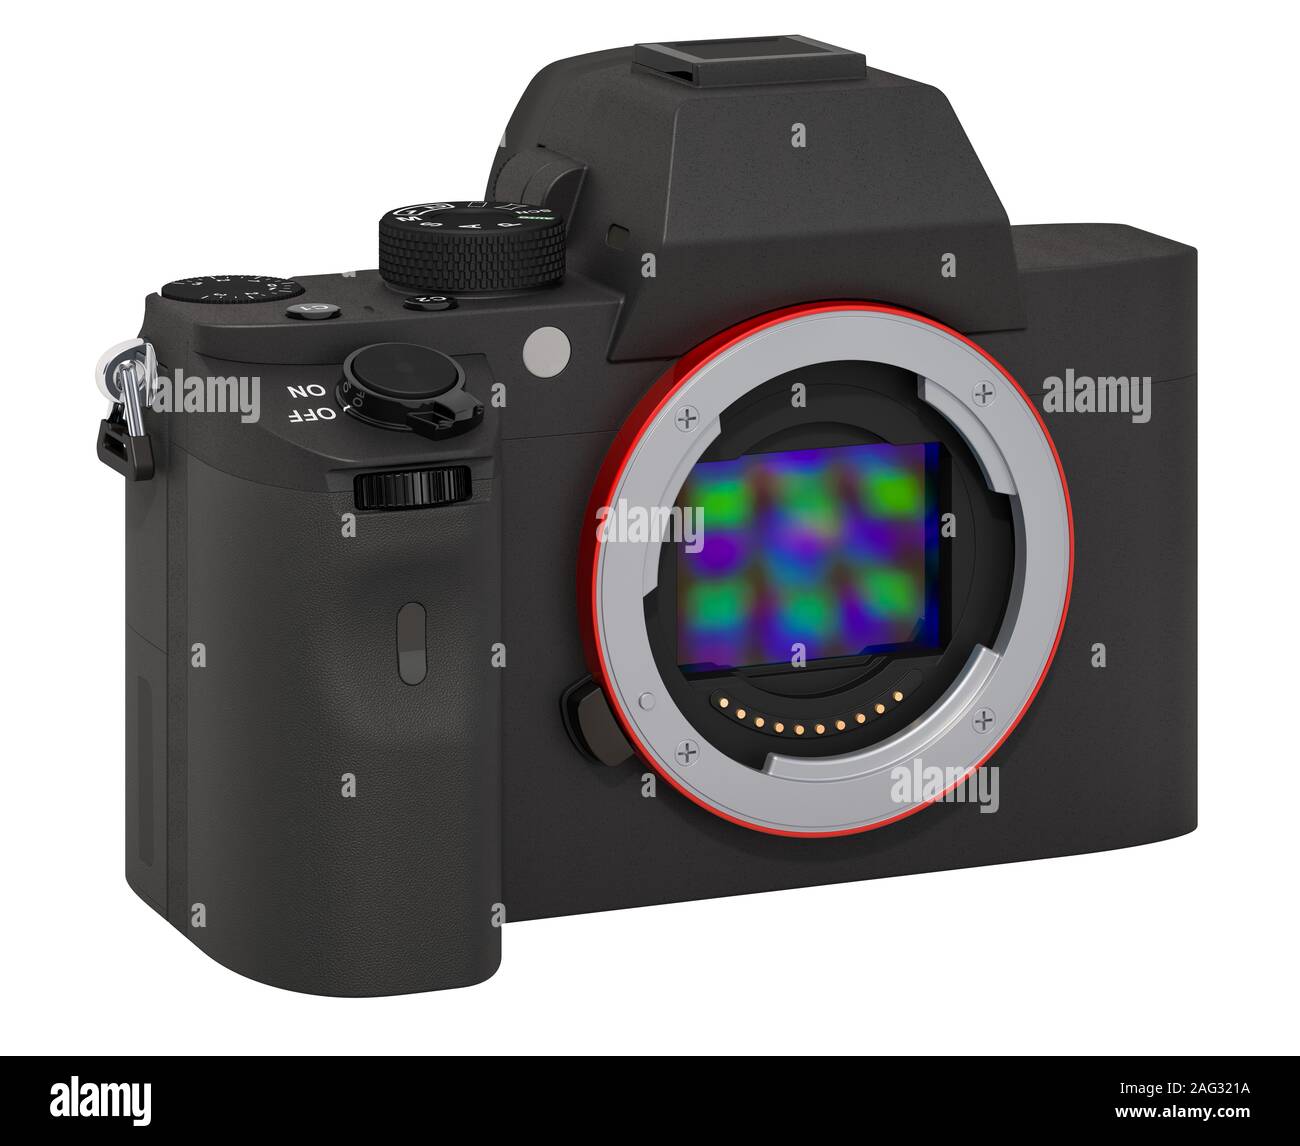 Full Frame spiegellosen Digitalkameras mit austauschbarem Objektiv, Körper. 3D-Rendering auf weißem Hintergrund Stockfoto